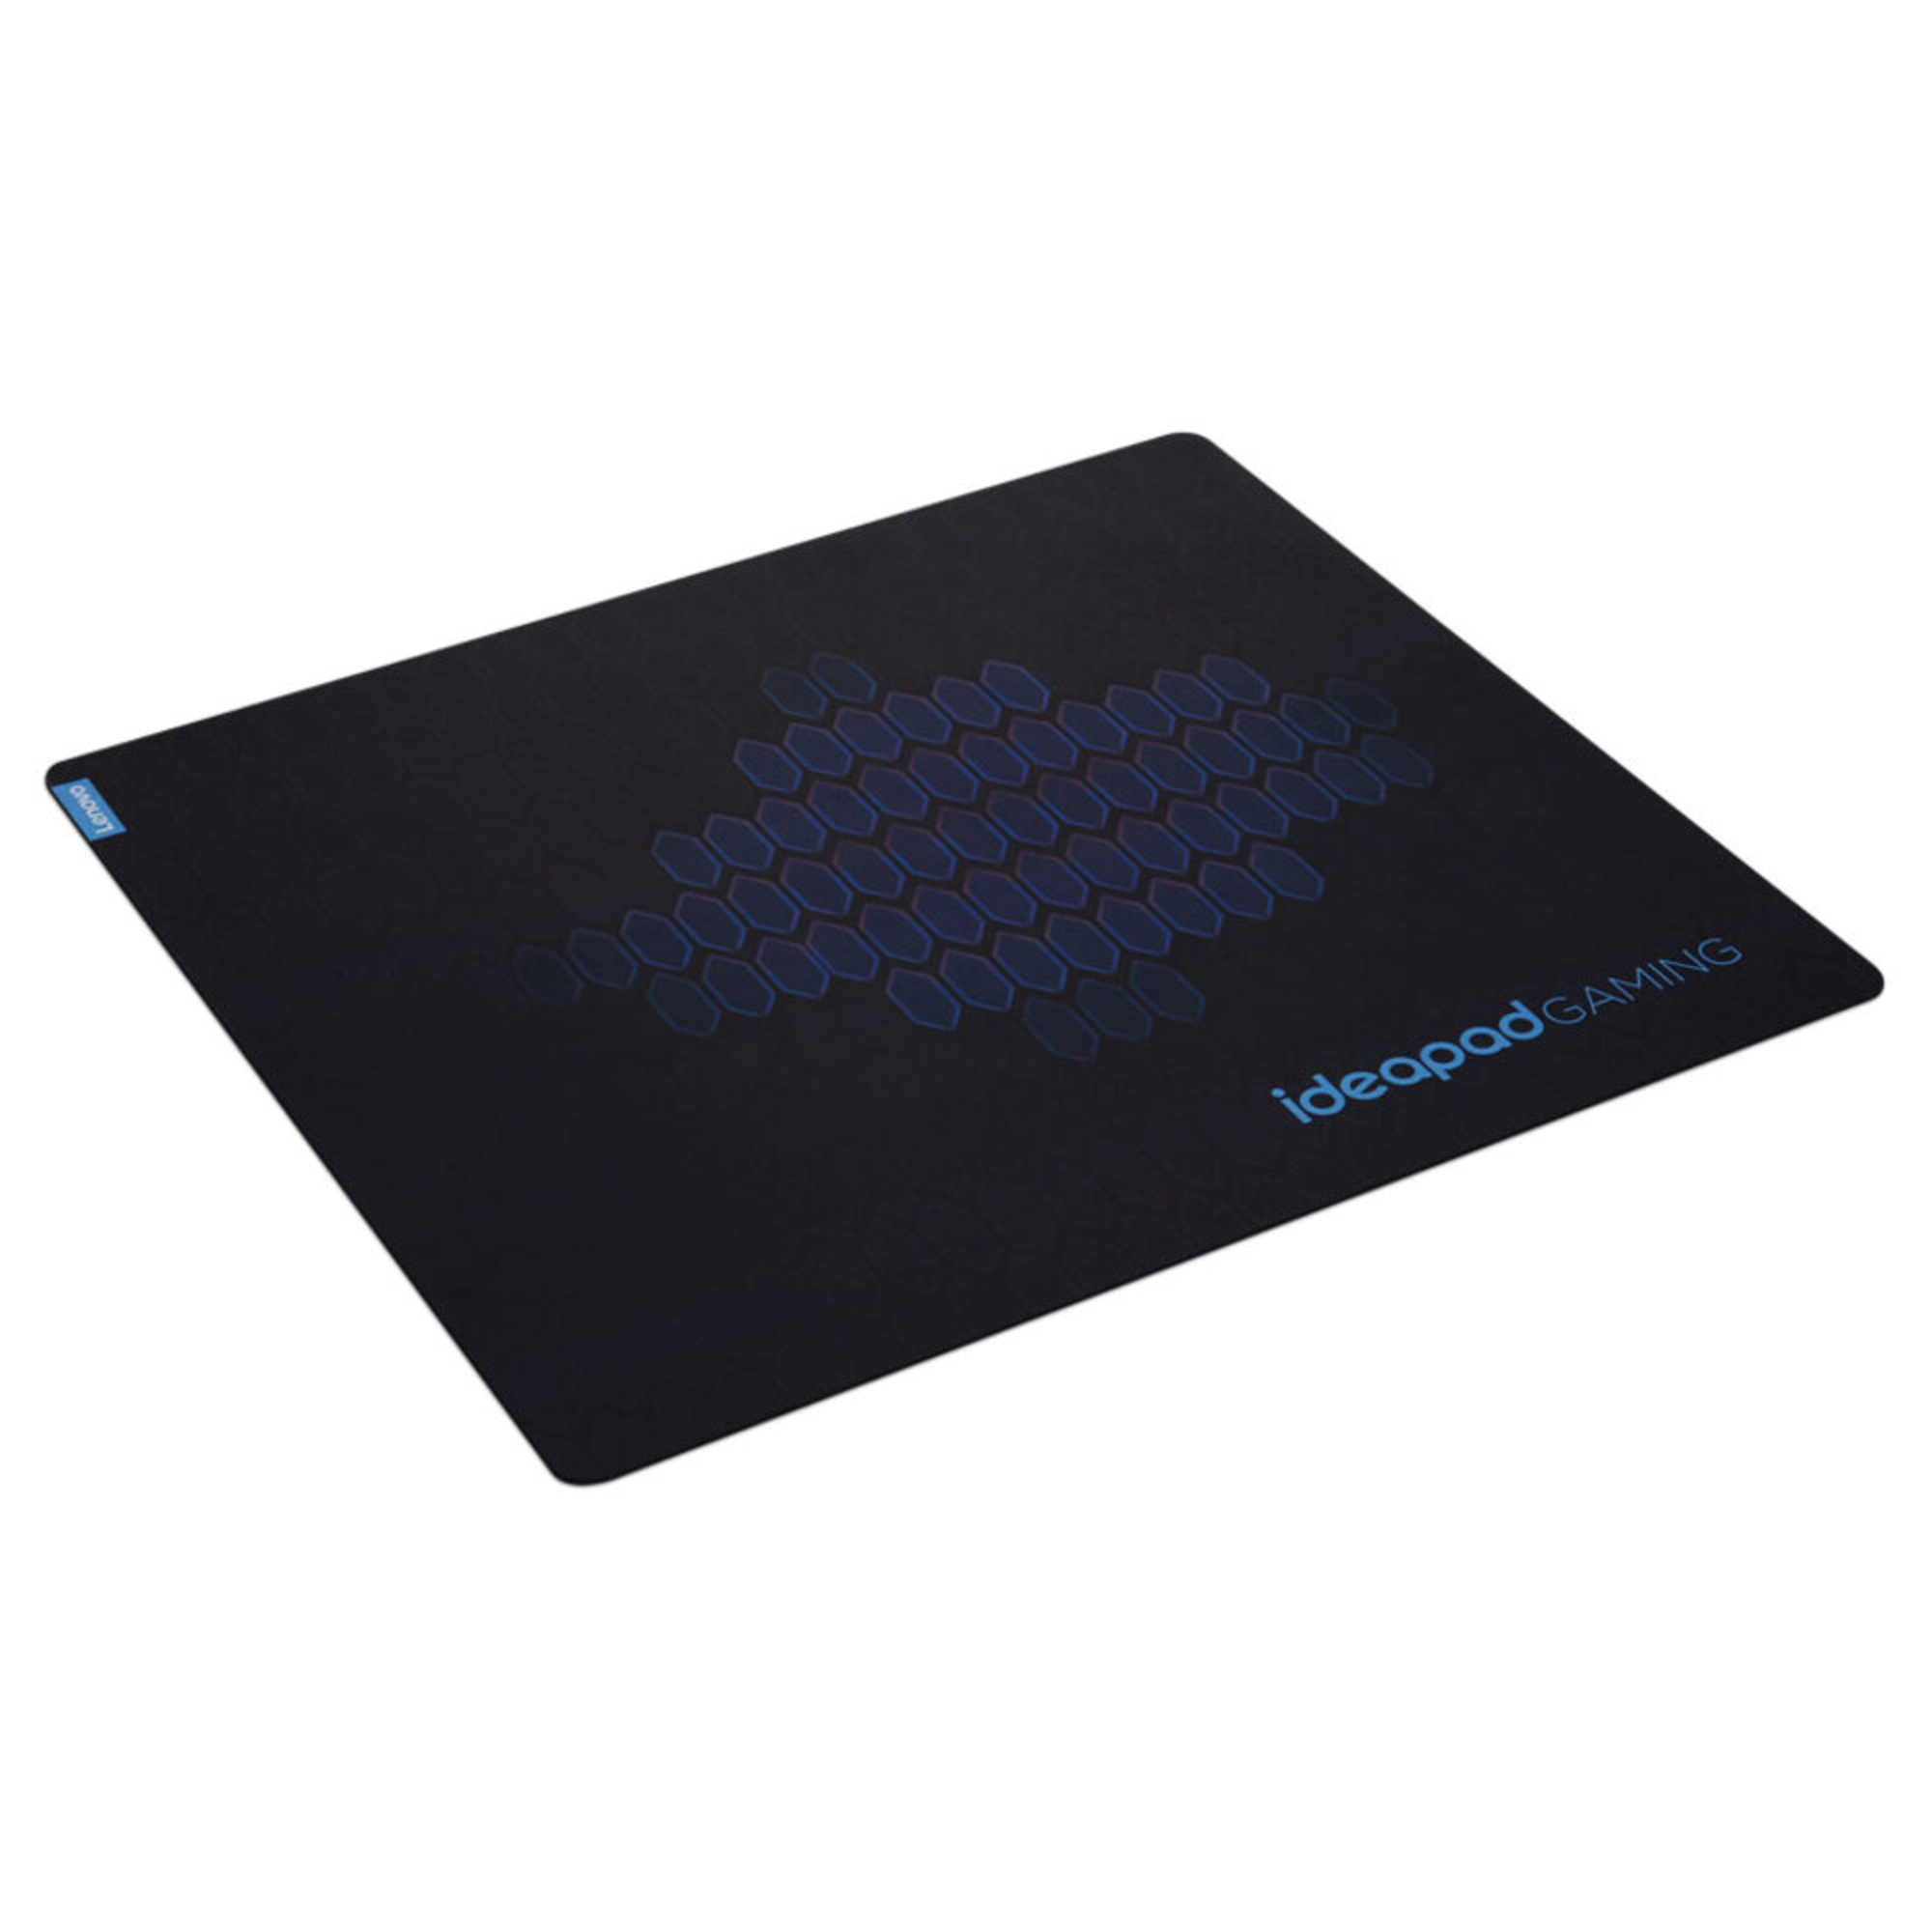 Tapete de Rato Gaming IdeaPad, Microfibra, 45 x 40 cm, Preto e Azul